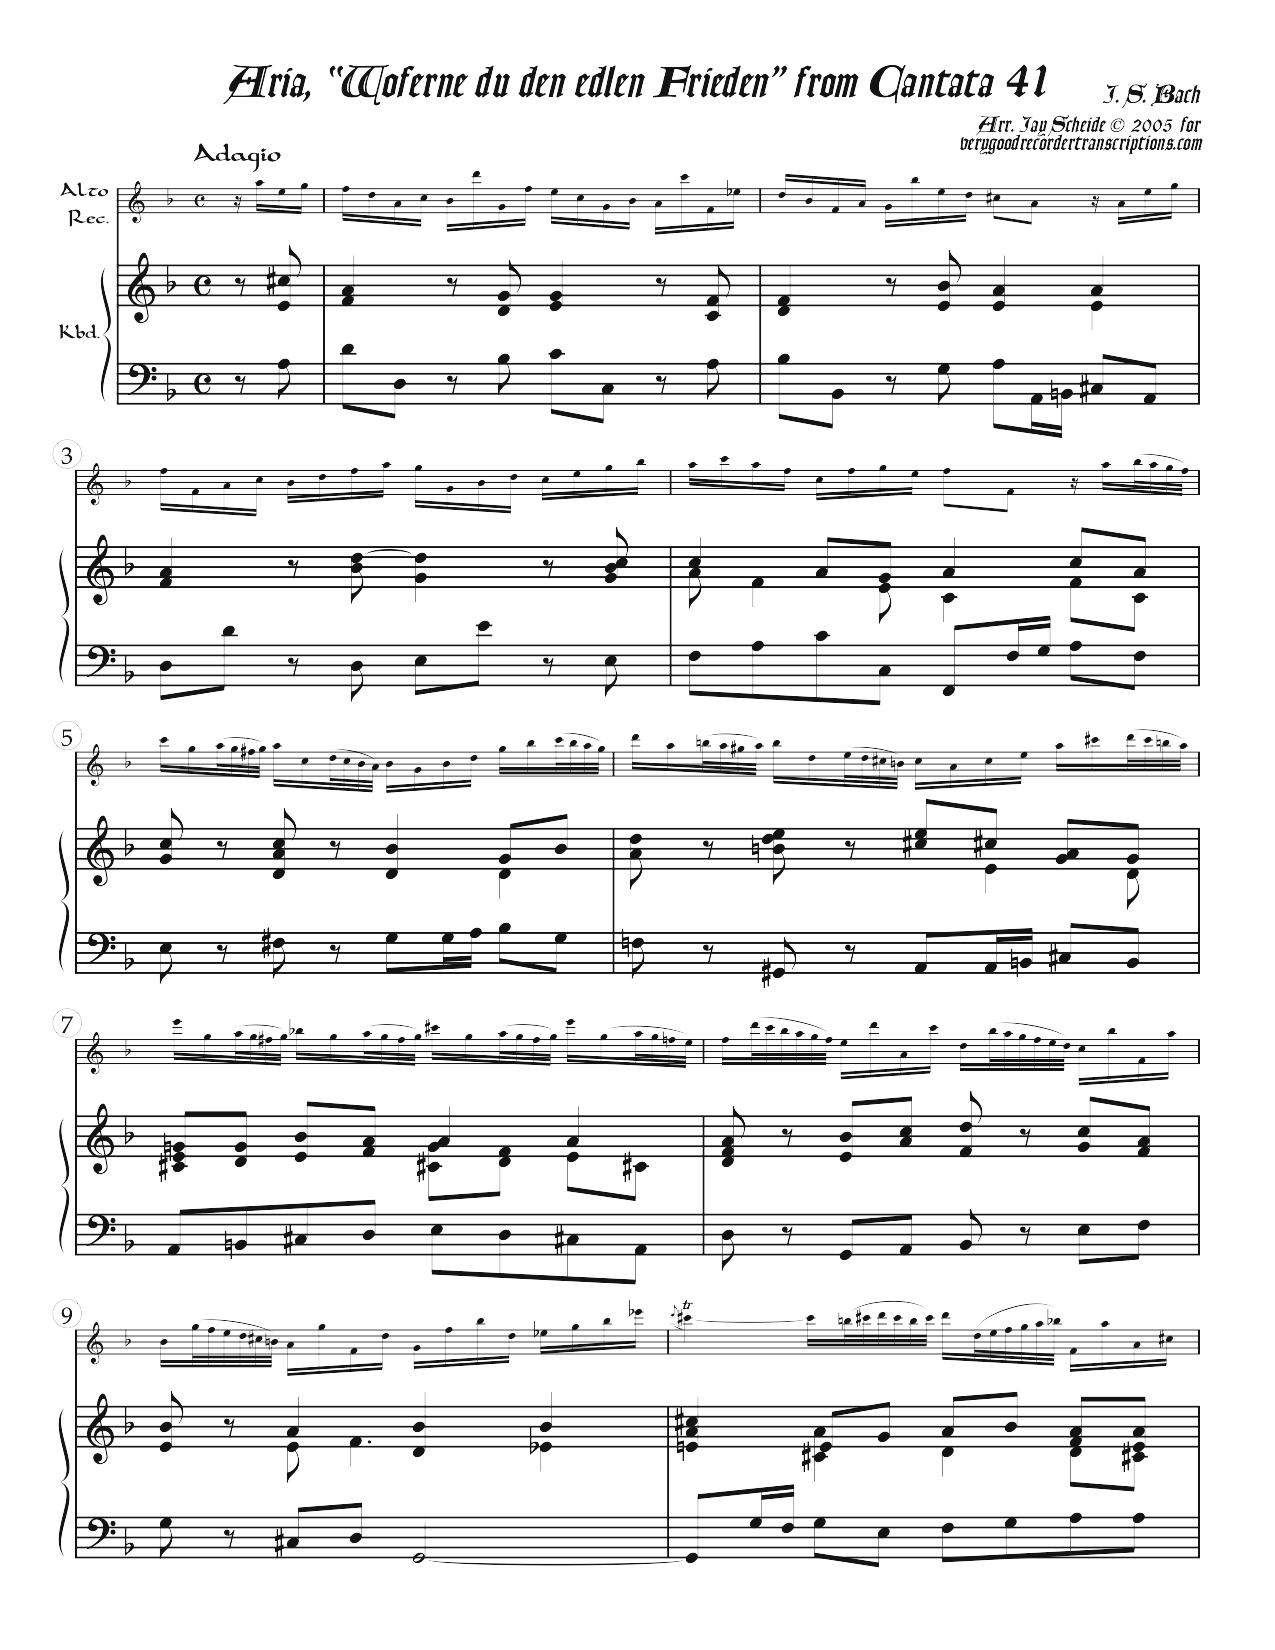 Aria, “Woferne du den edlen Frieden,” from Cantata 41